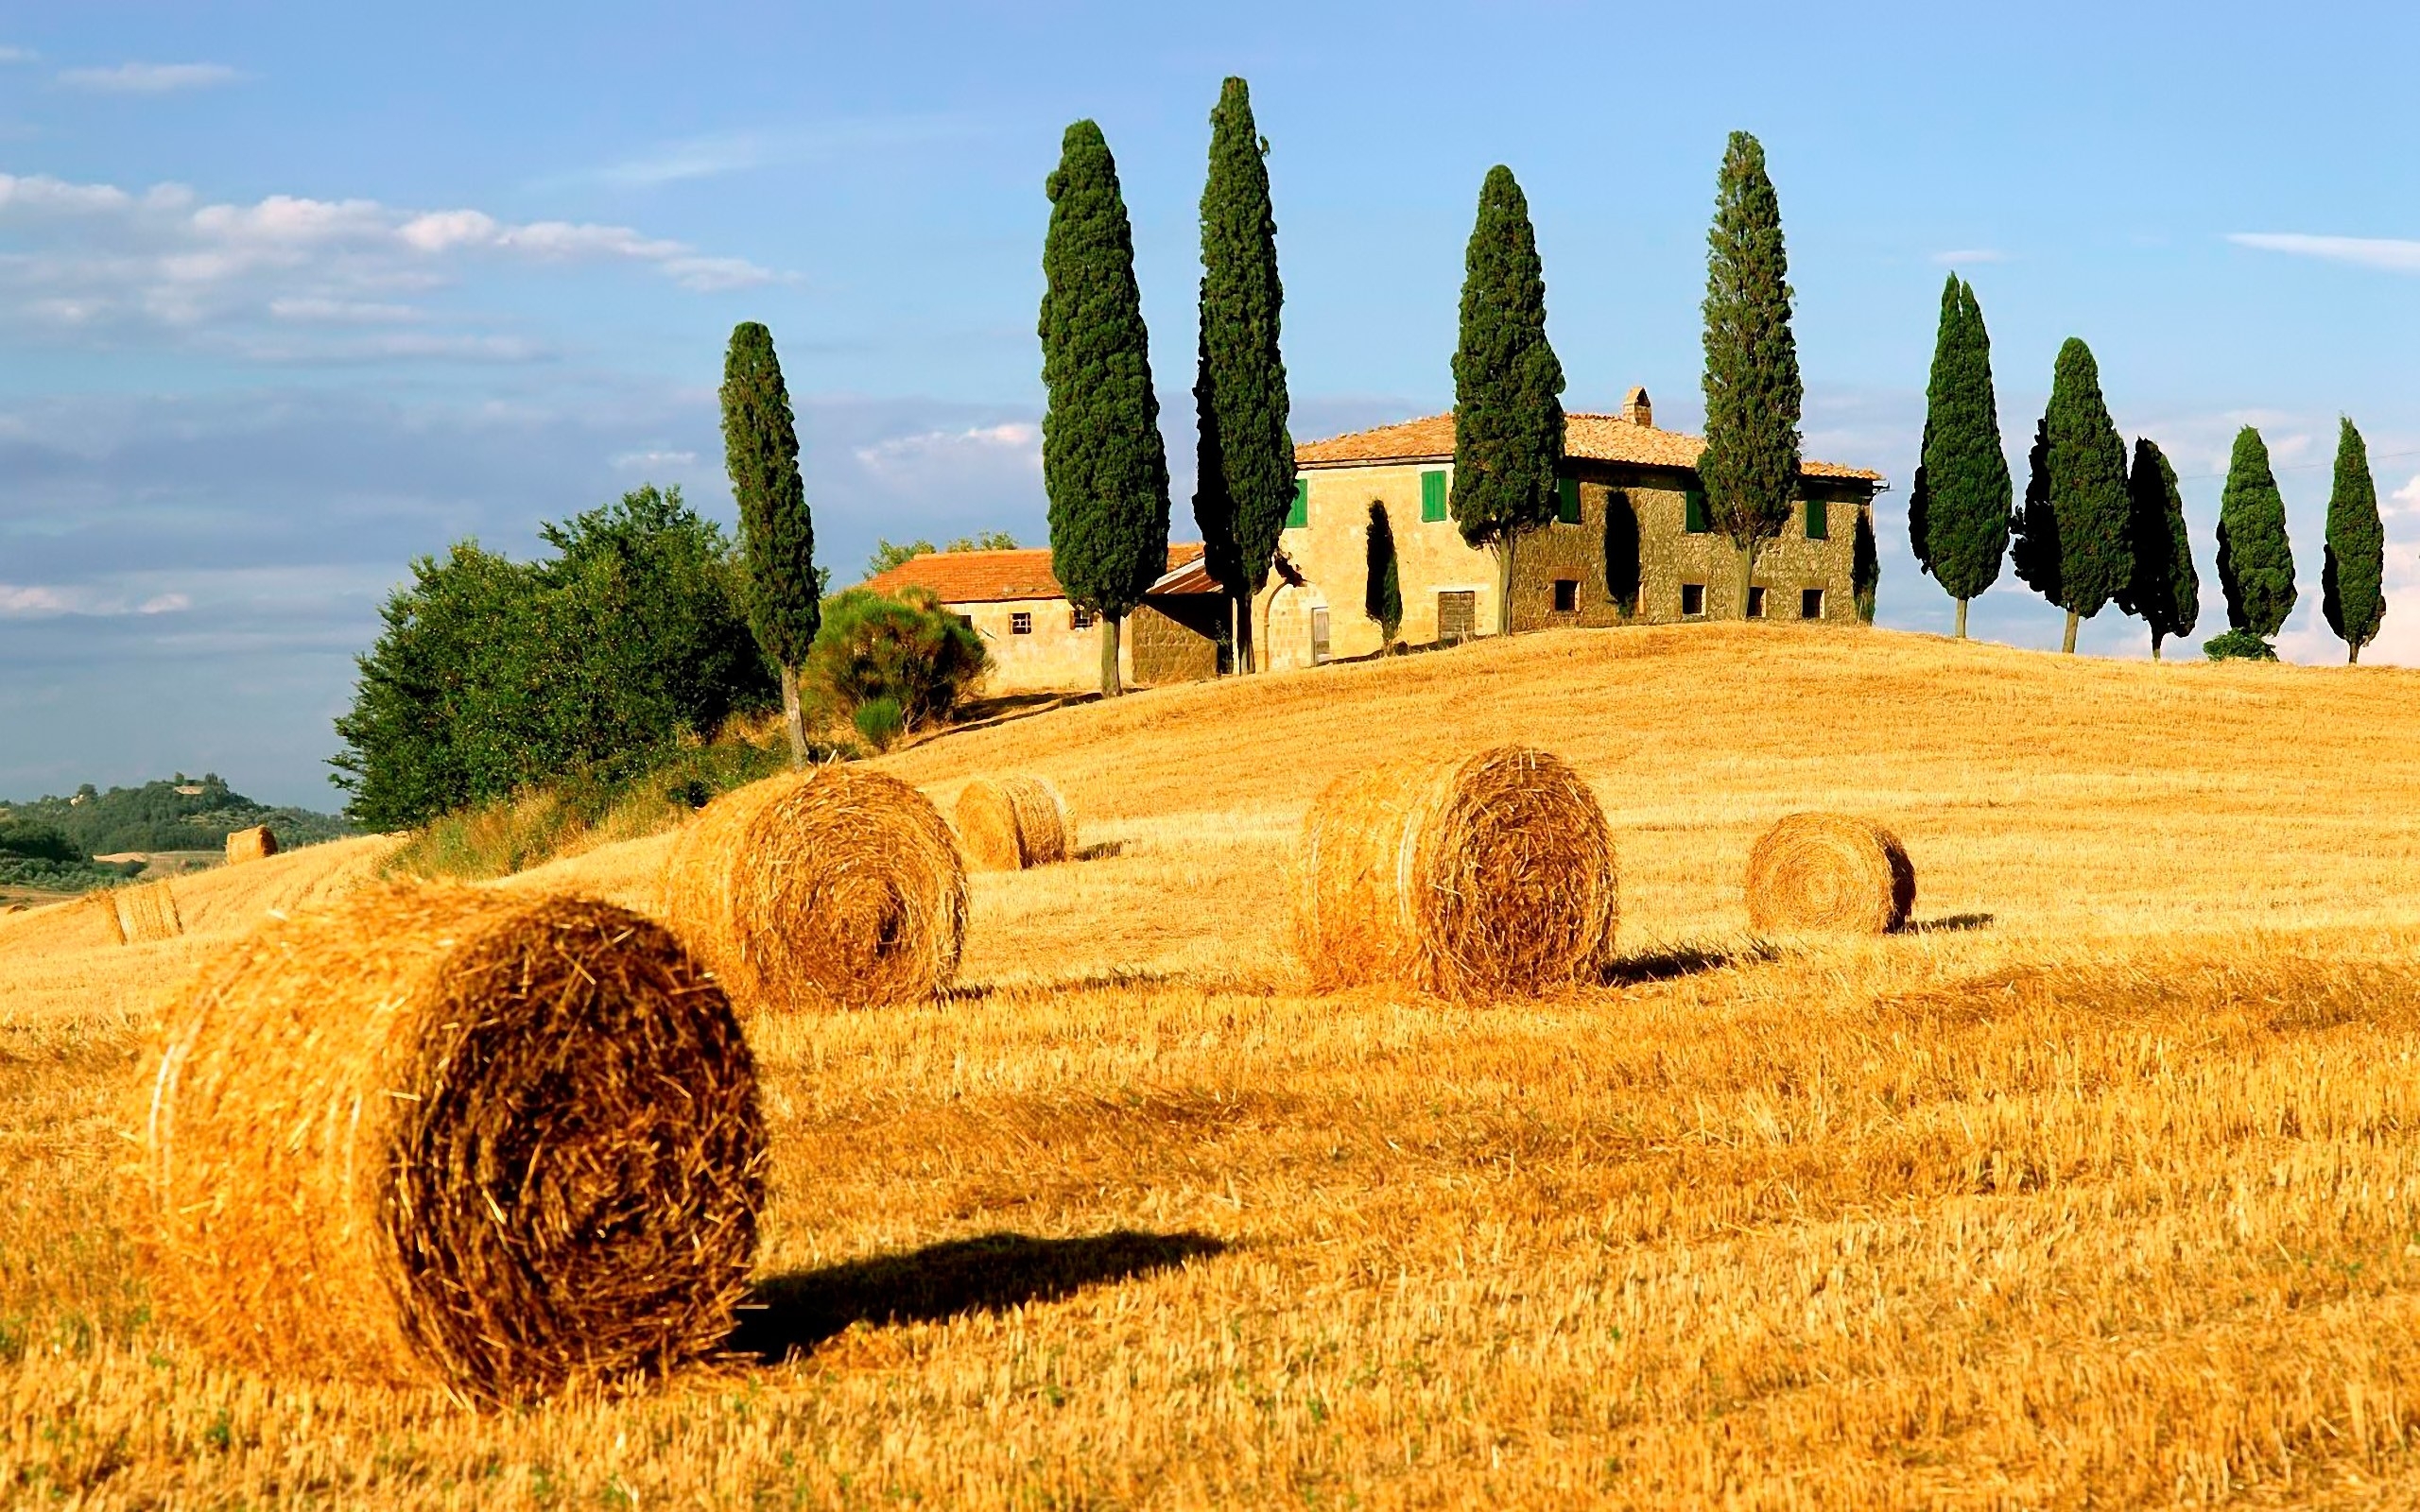 tuscany, man made, house, field, haystack, italy, landscape, tree